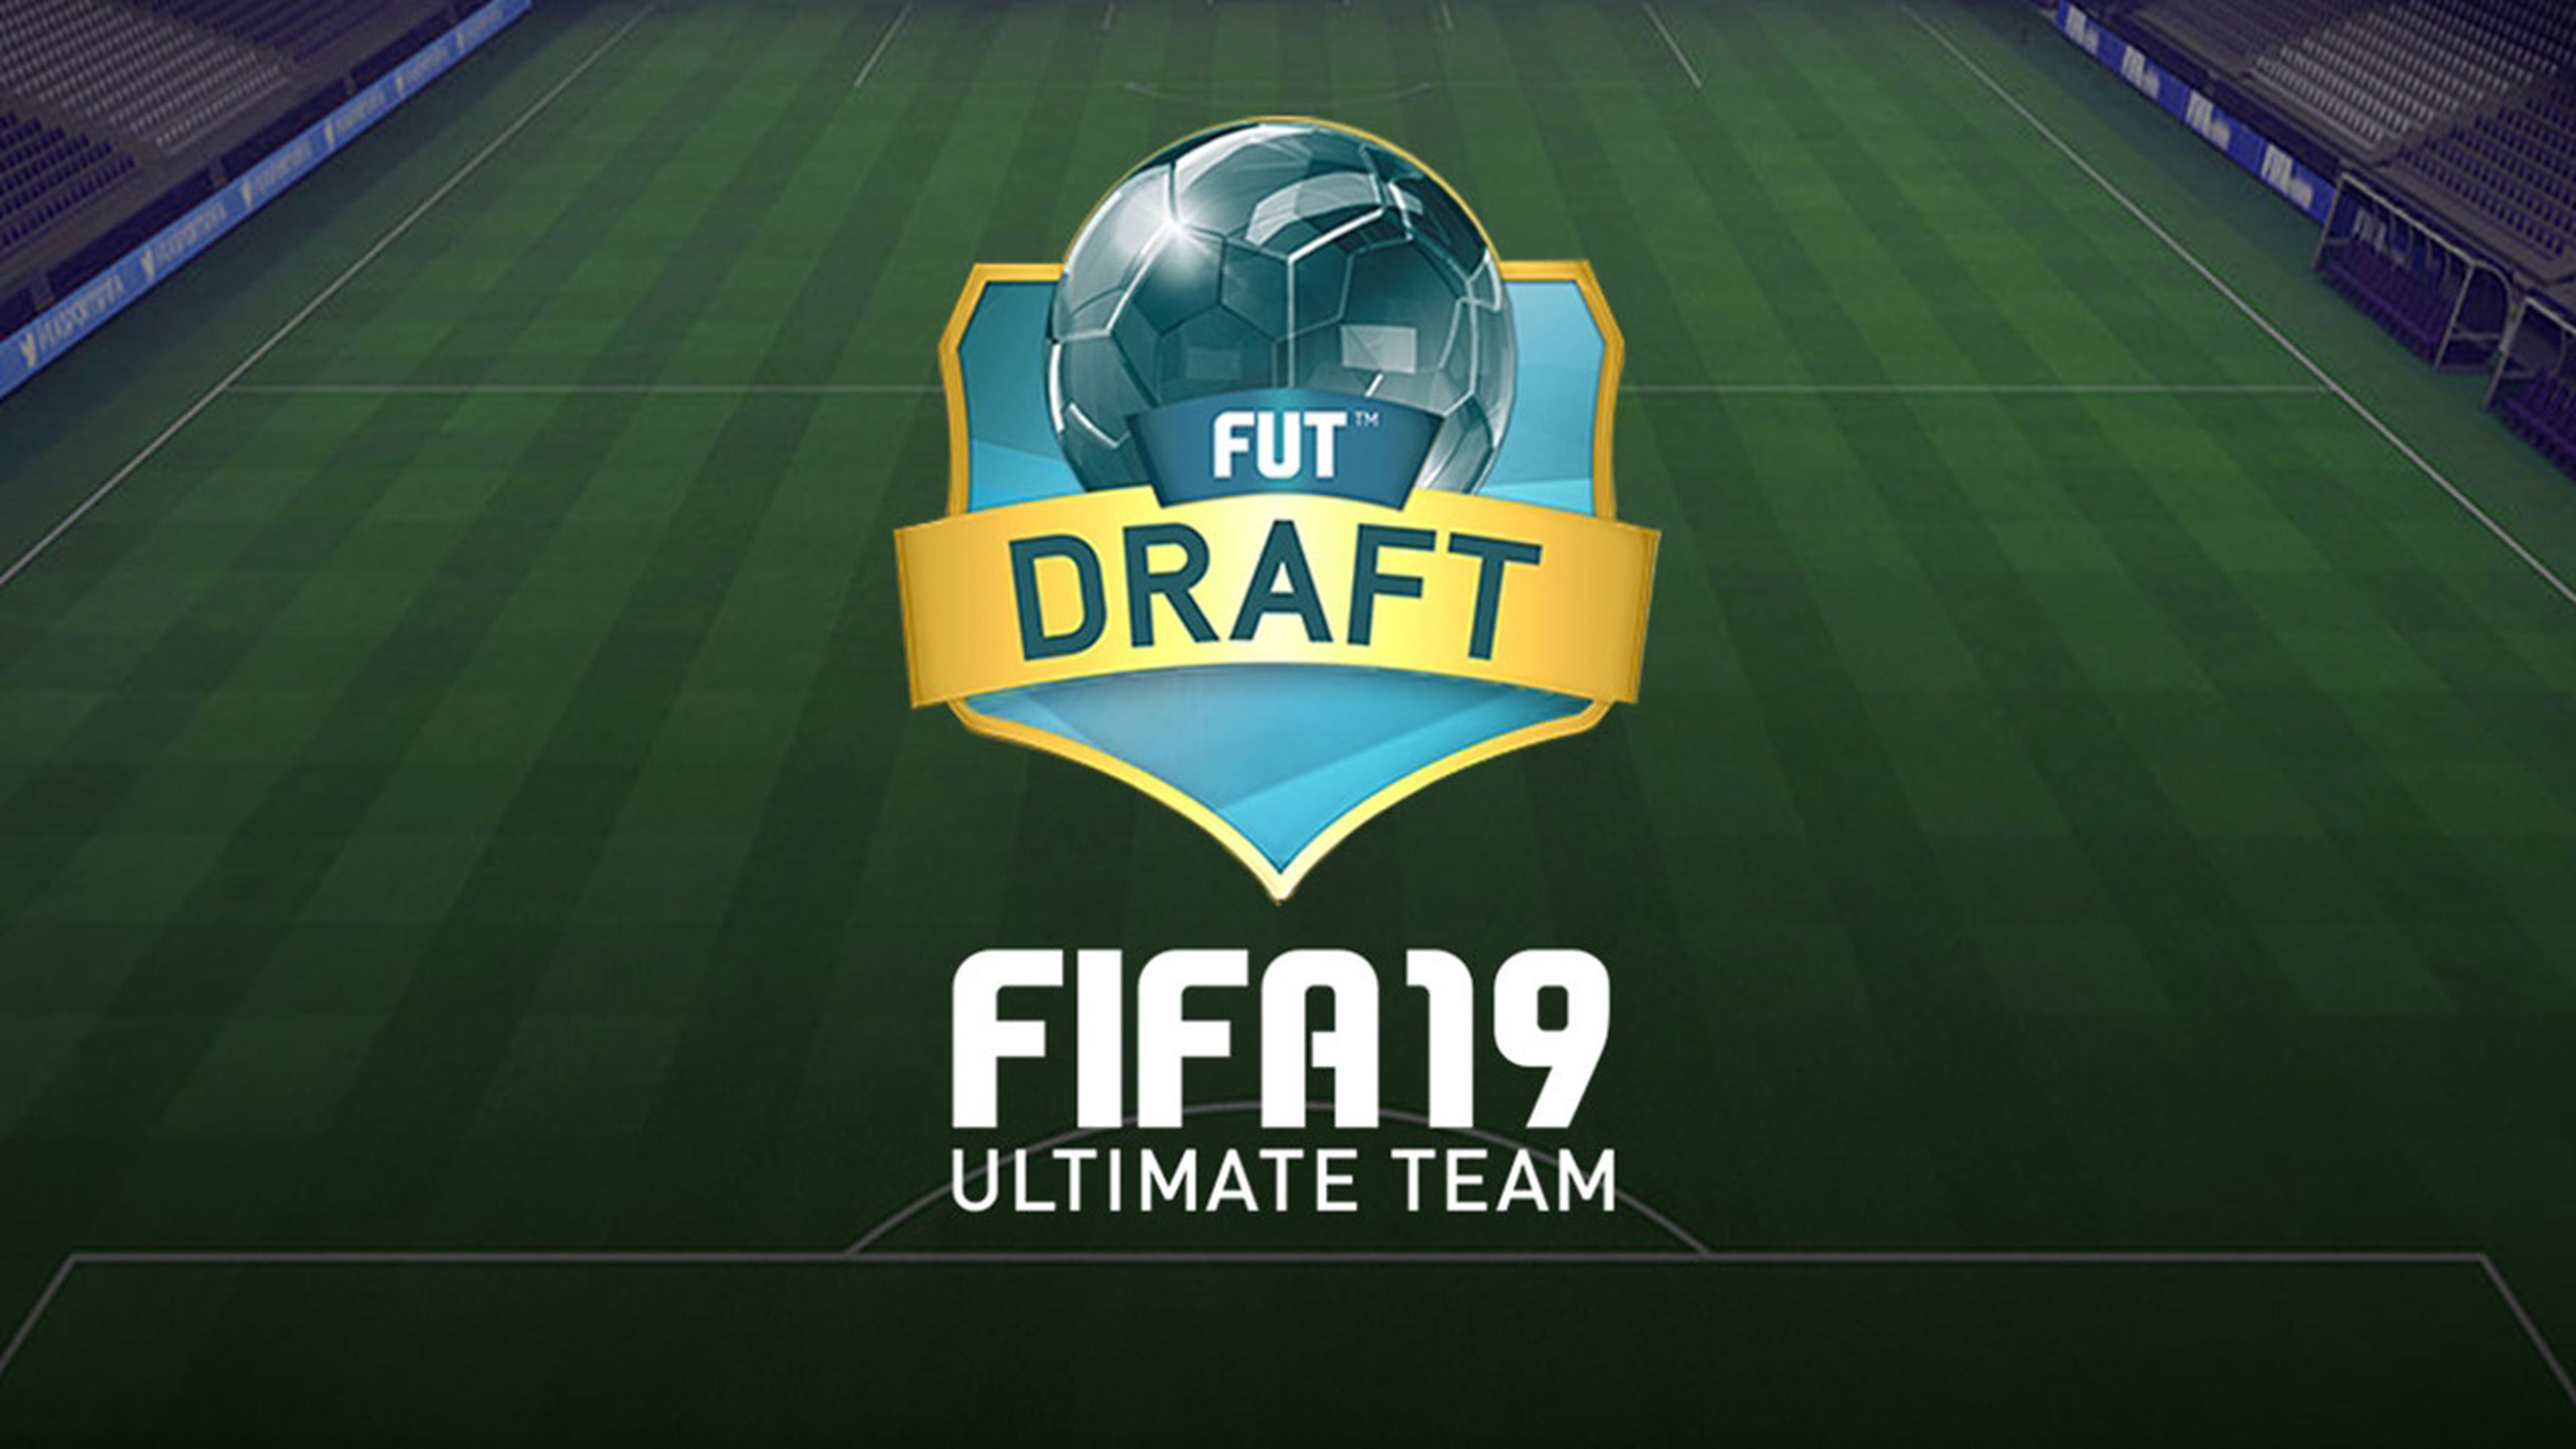 FUT Draft FIFA 19